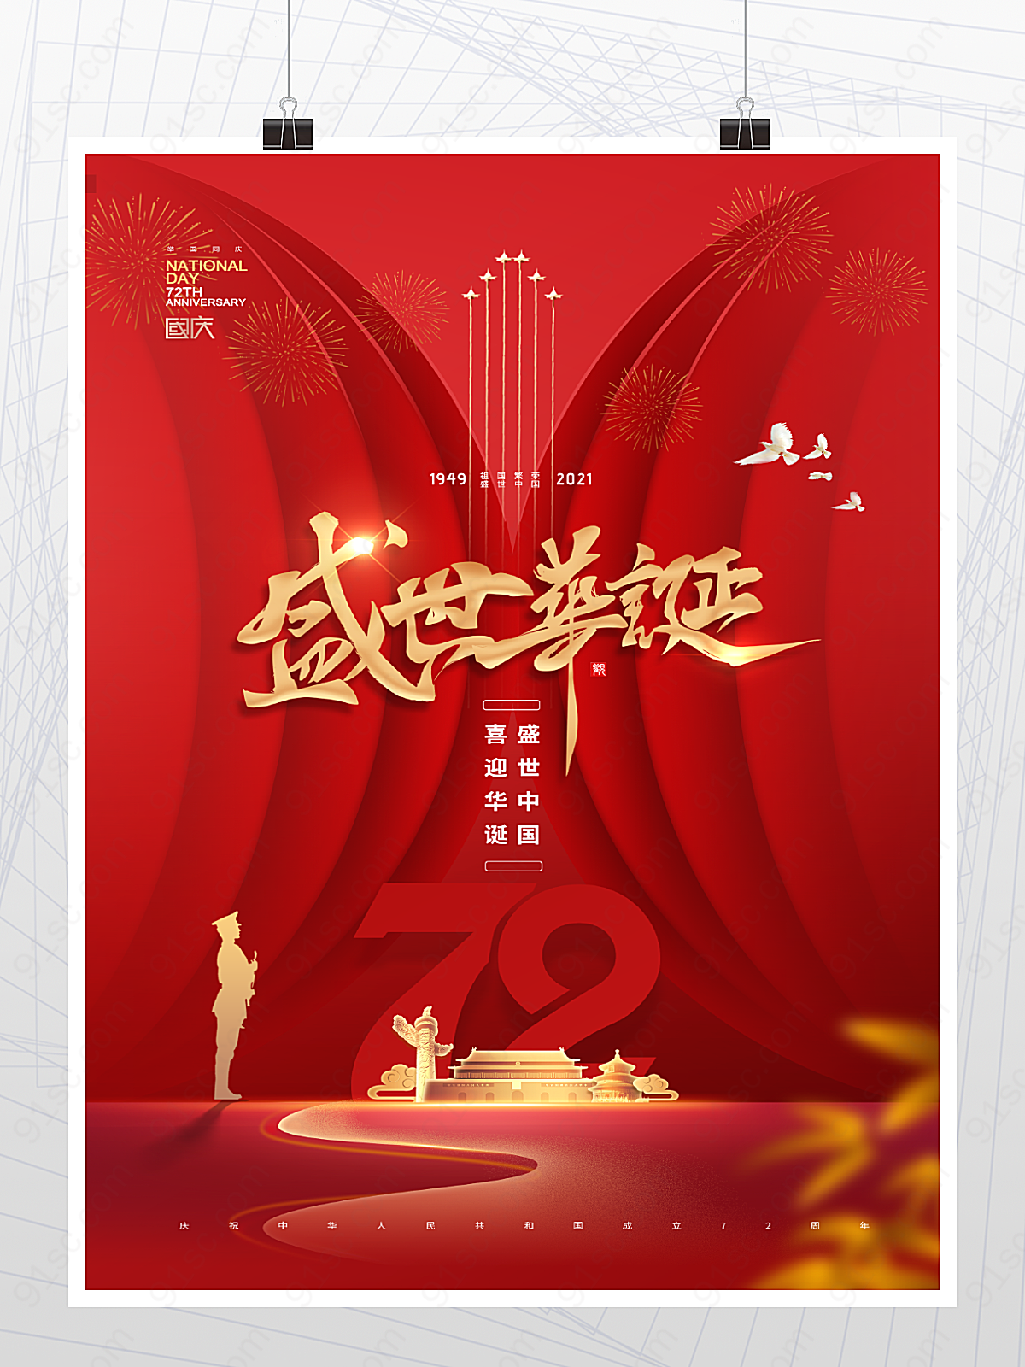 盛世华诞72周年国庆节日庆祝海报